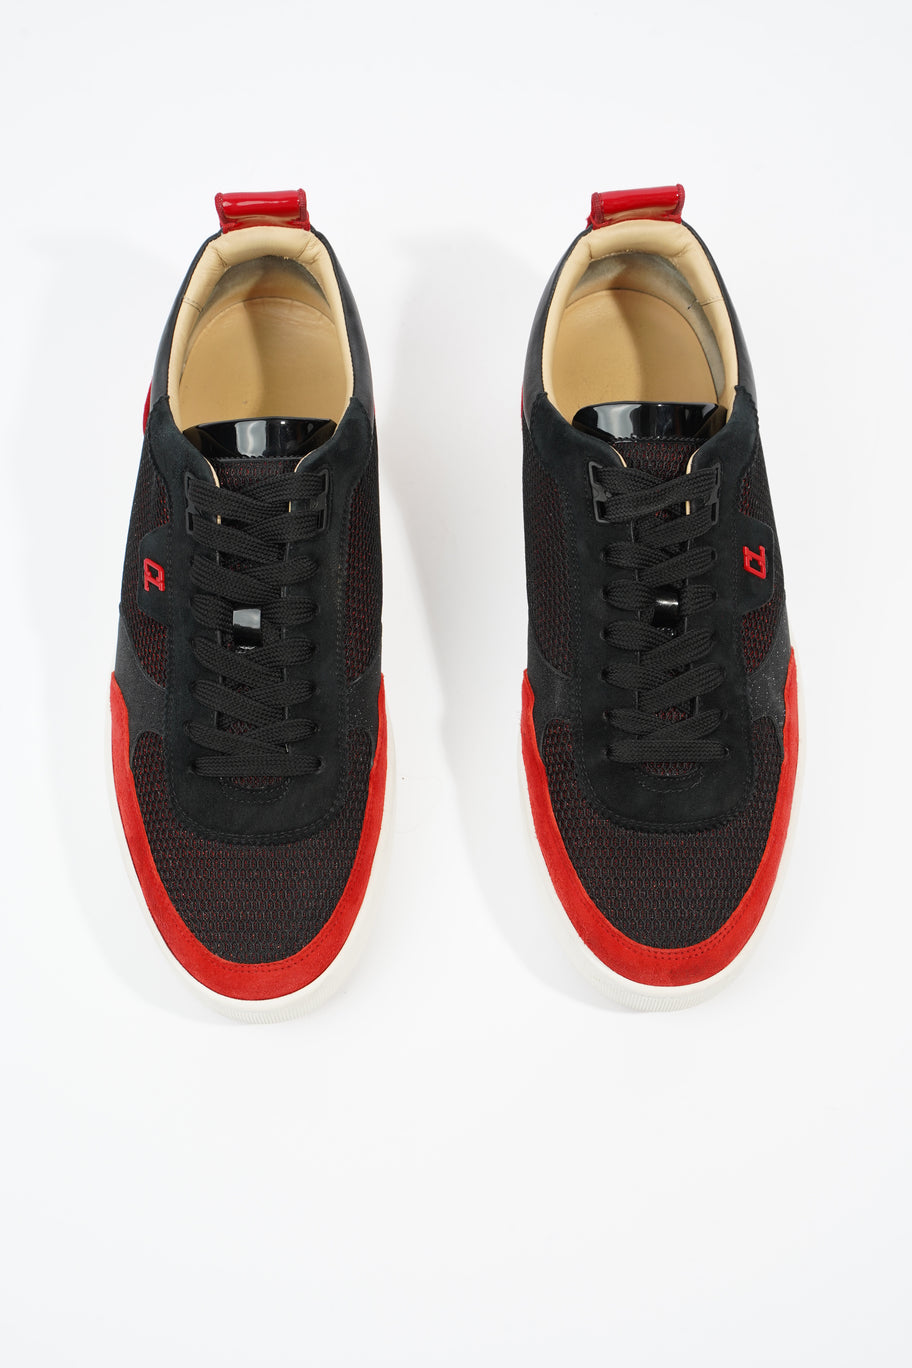 Happyrui Sneakers Black / Red Mesh EU 42.5 UK 8.5 Image 8